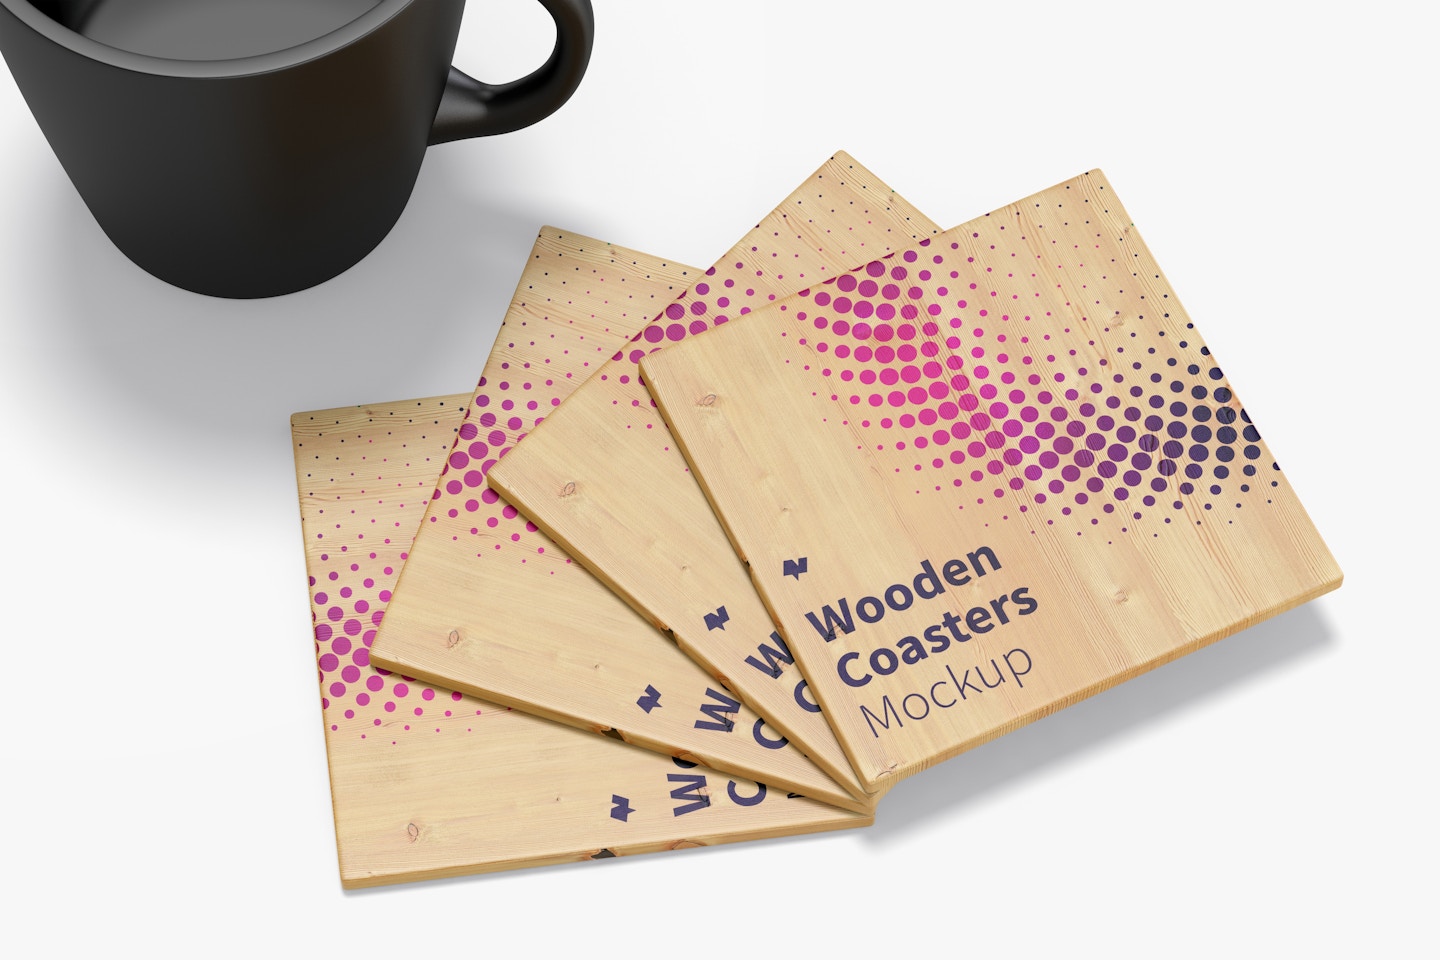 Wooden Coasters Mockup, Close-Up